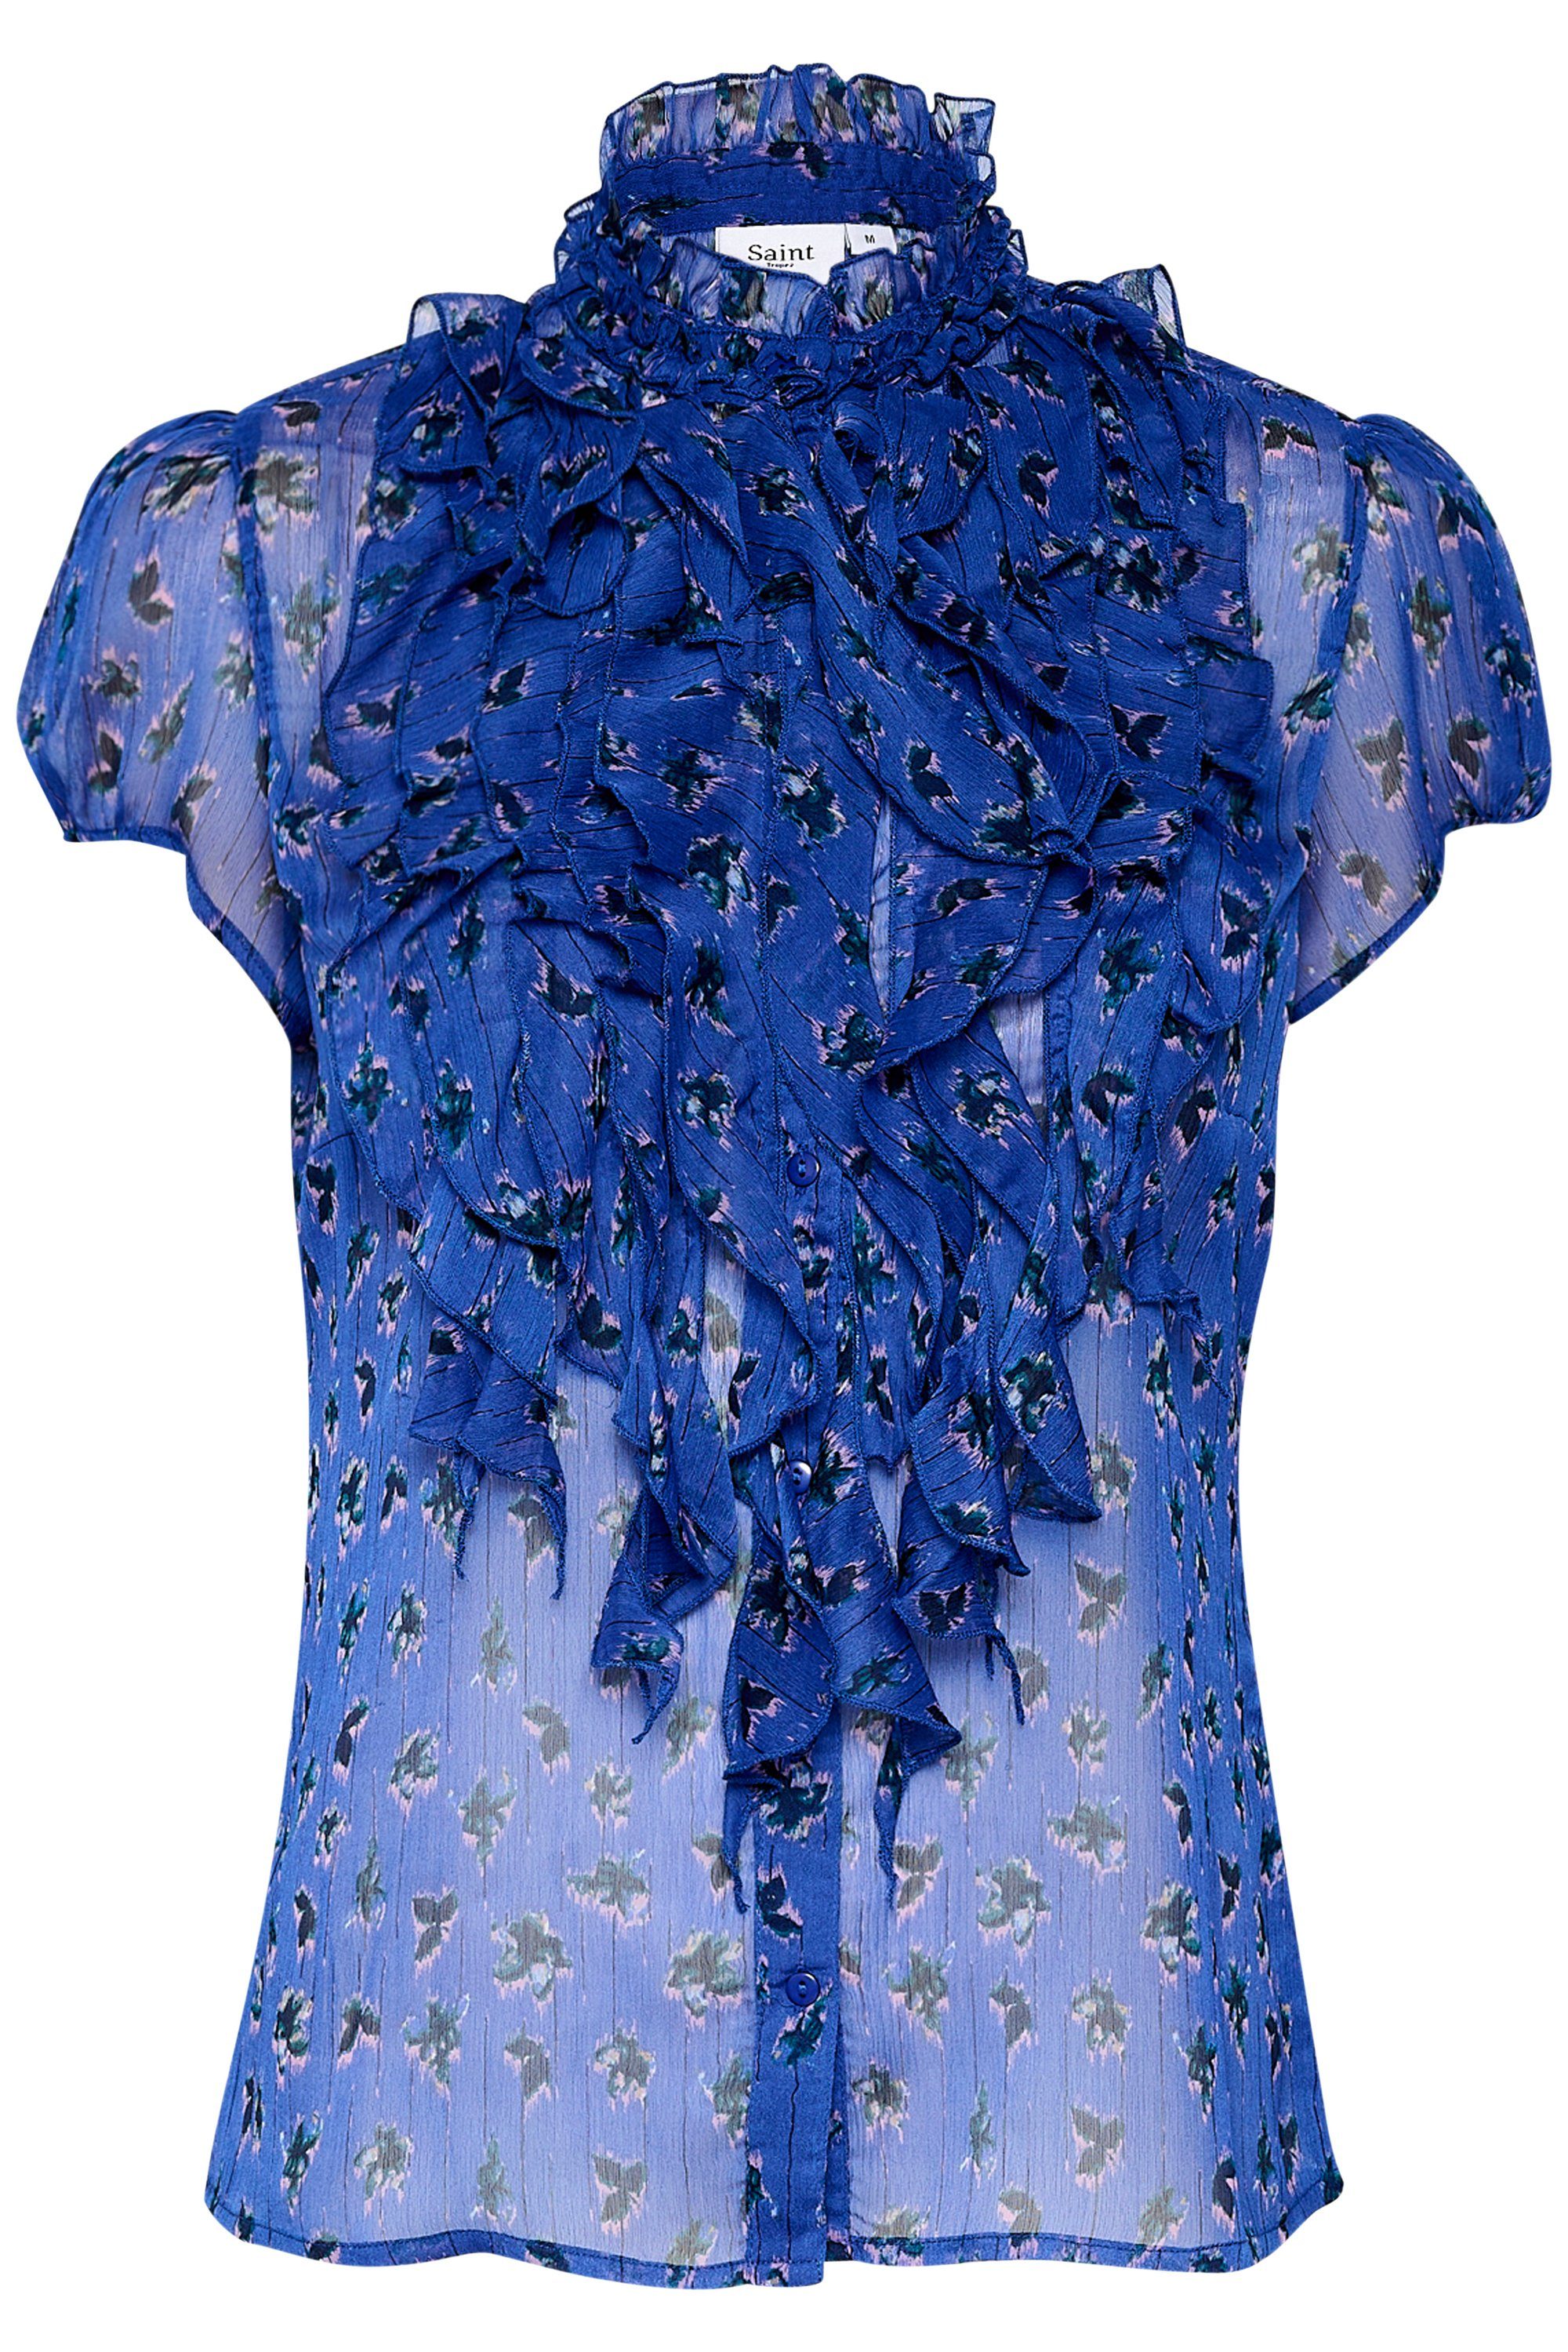 Saint Tropez Kurzarmhemd Langarm - Hemd LiljaSZ Sodalite Blue Flower Stripes